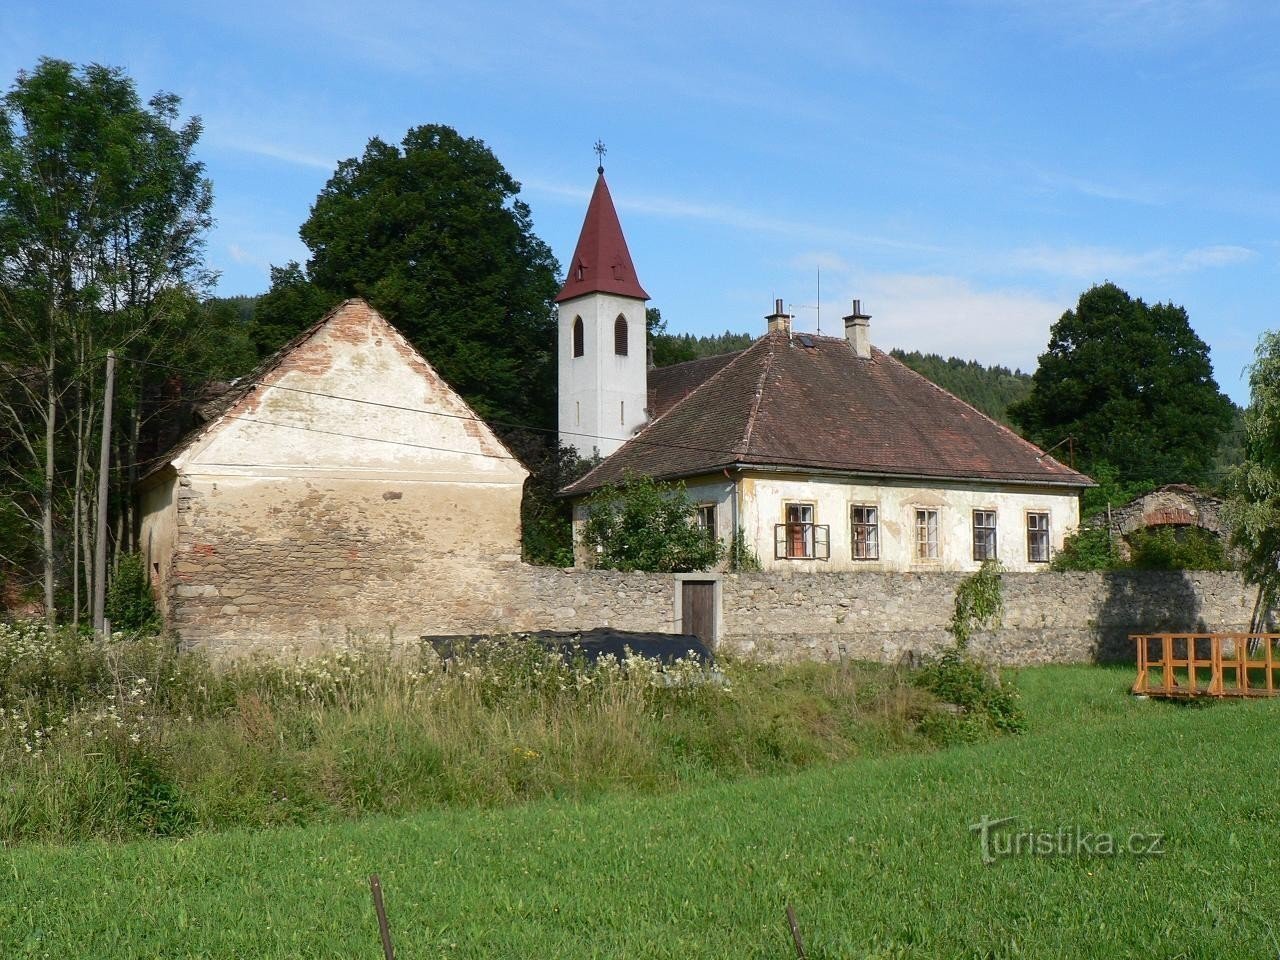 Chlístov, nhà xứ và nhà thờ